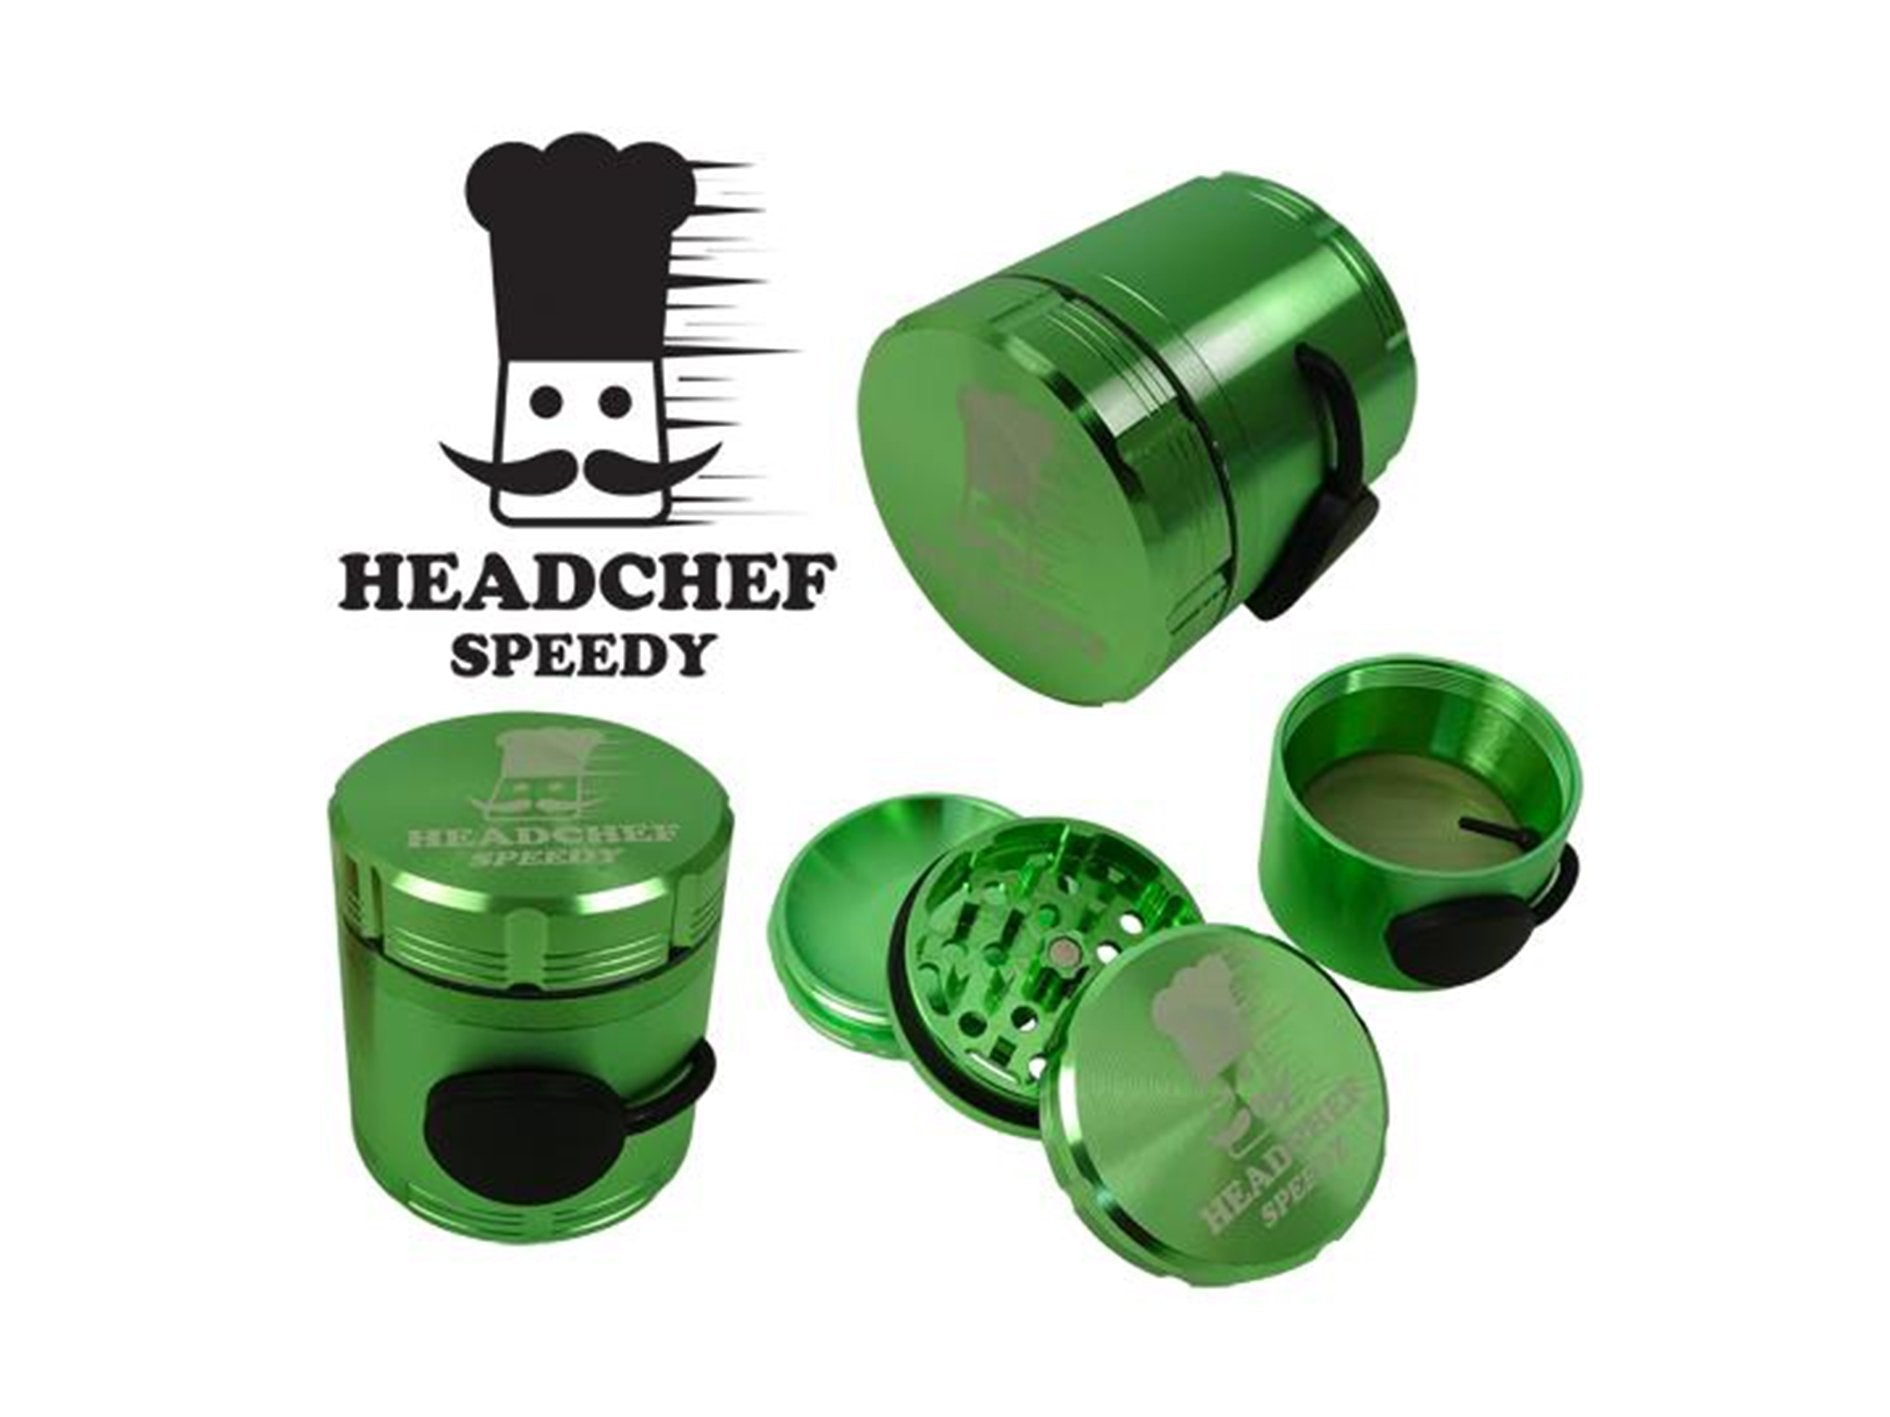 HEADCHEF Grinders Speedy - VIR Wholesale